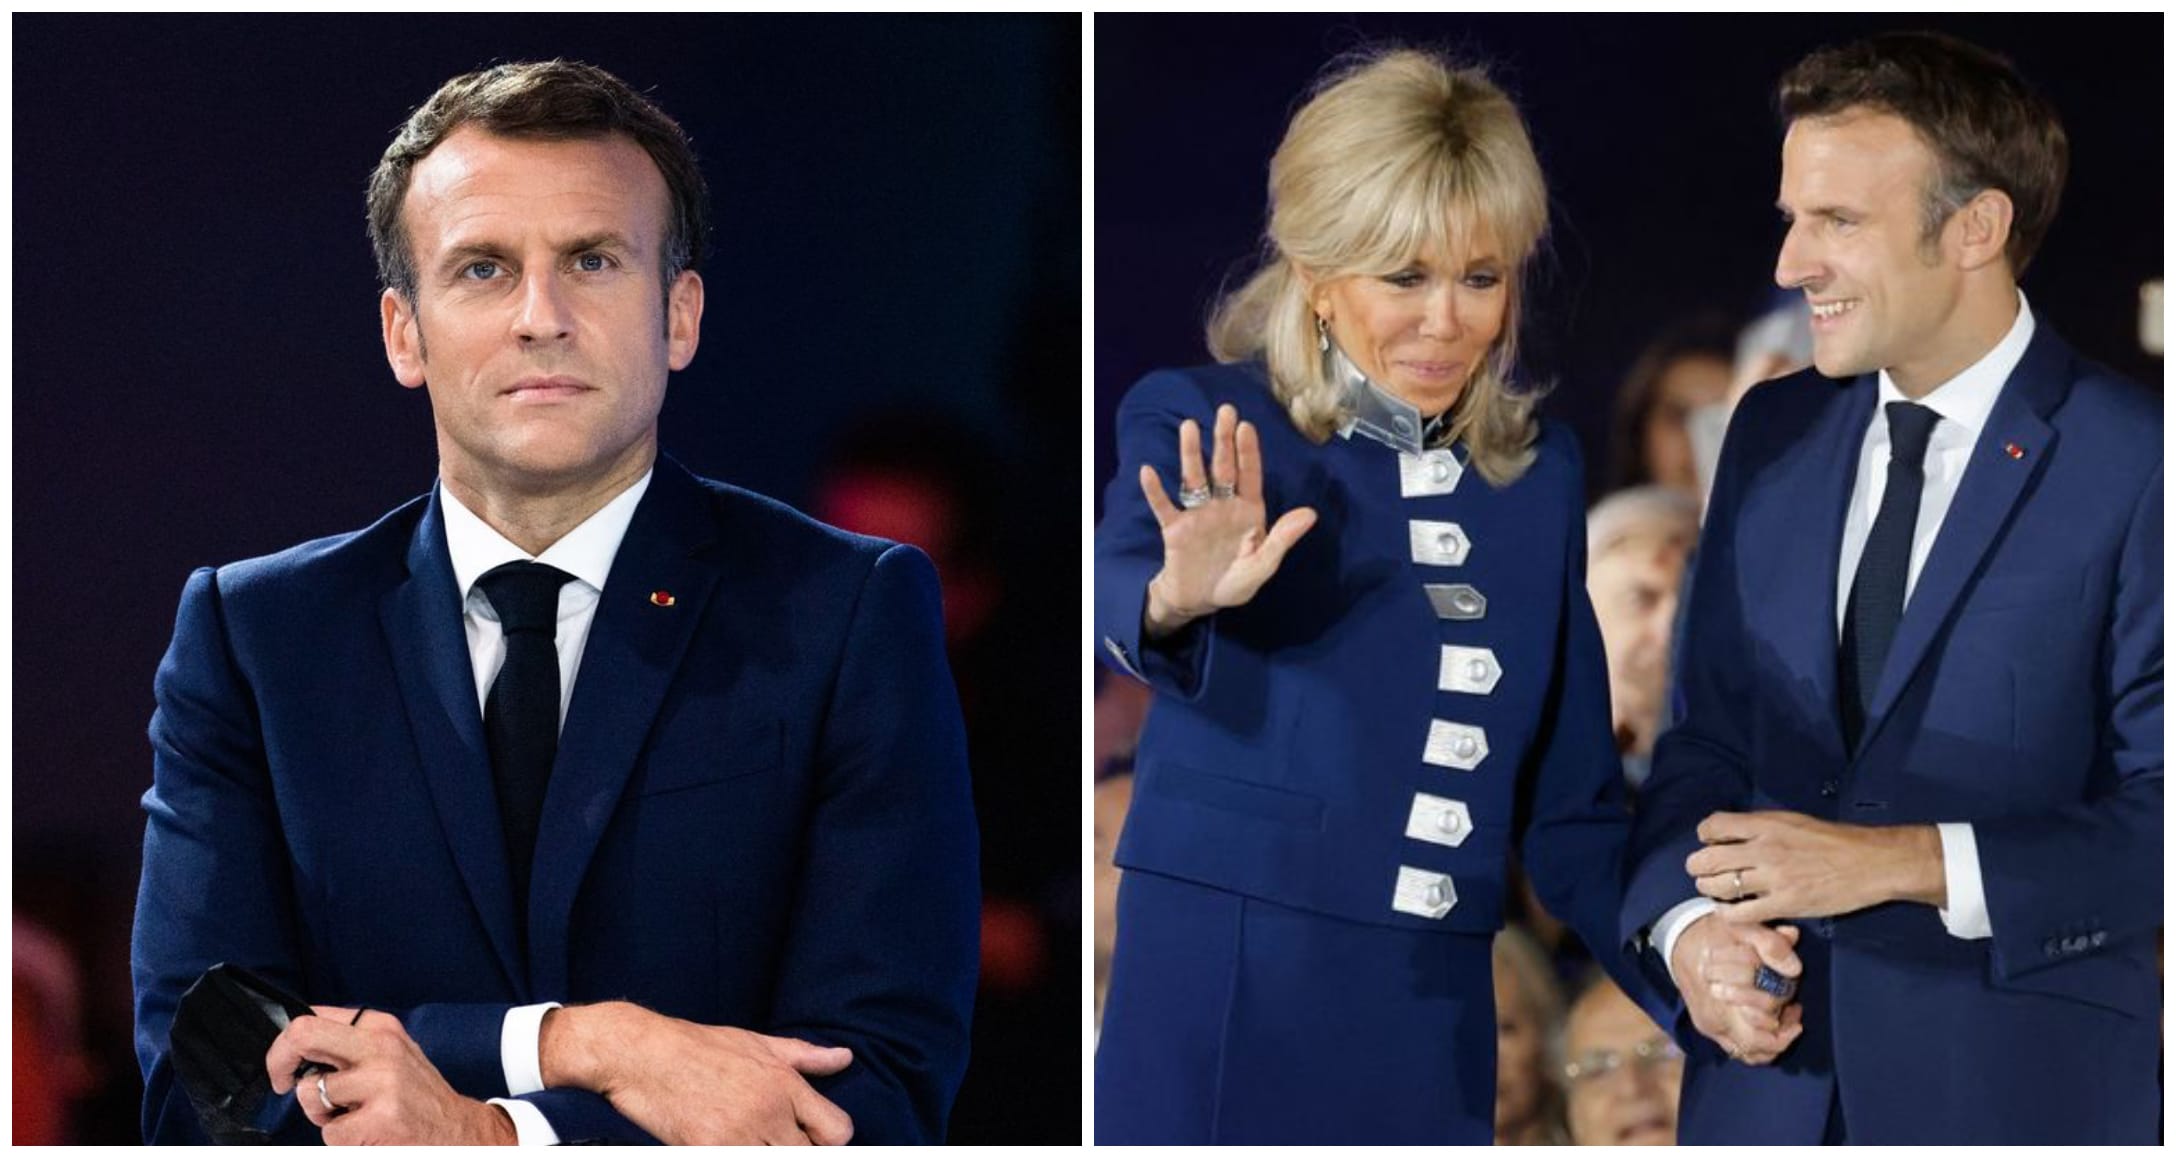 'Manu, à poil' : quand un militant perturbe le discours d'Emmanuel Macron